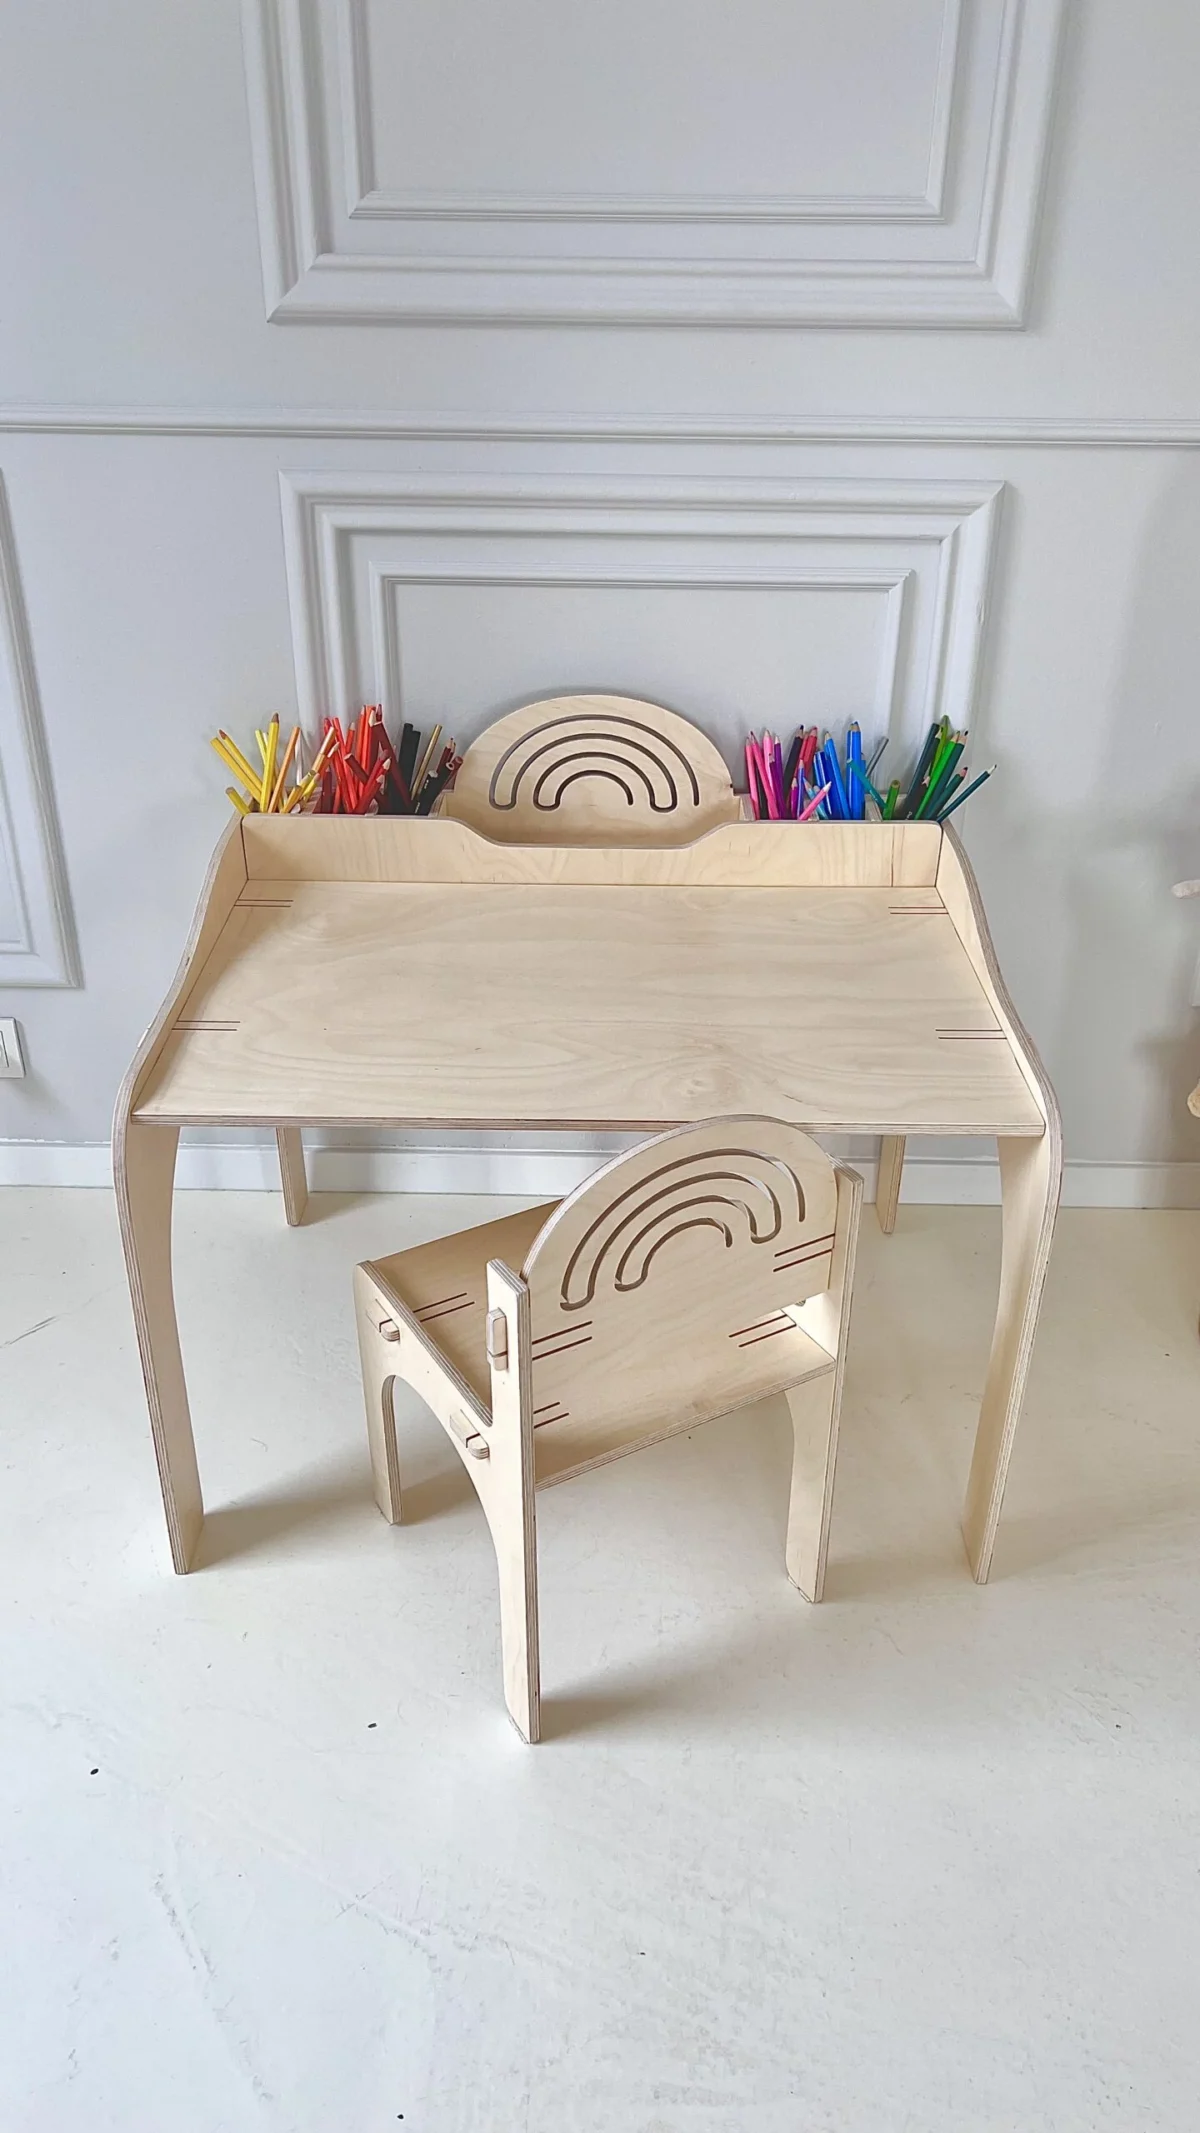 biurko ze sklejki tęcza i krzesełko